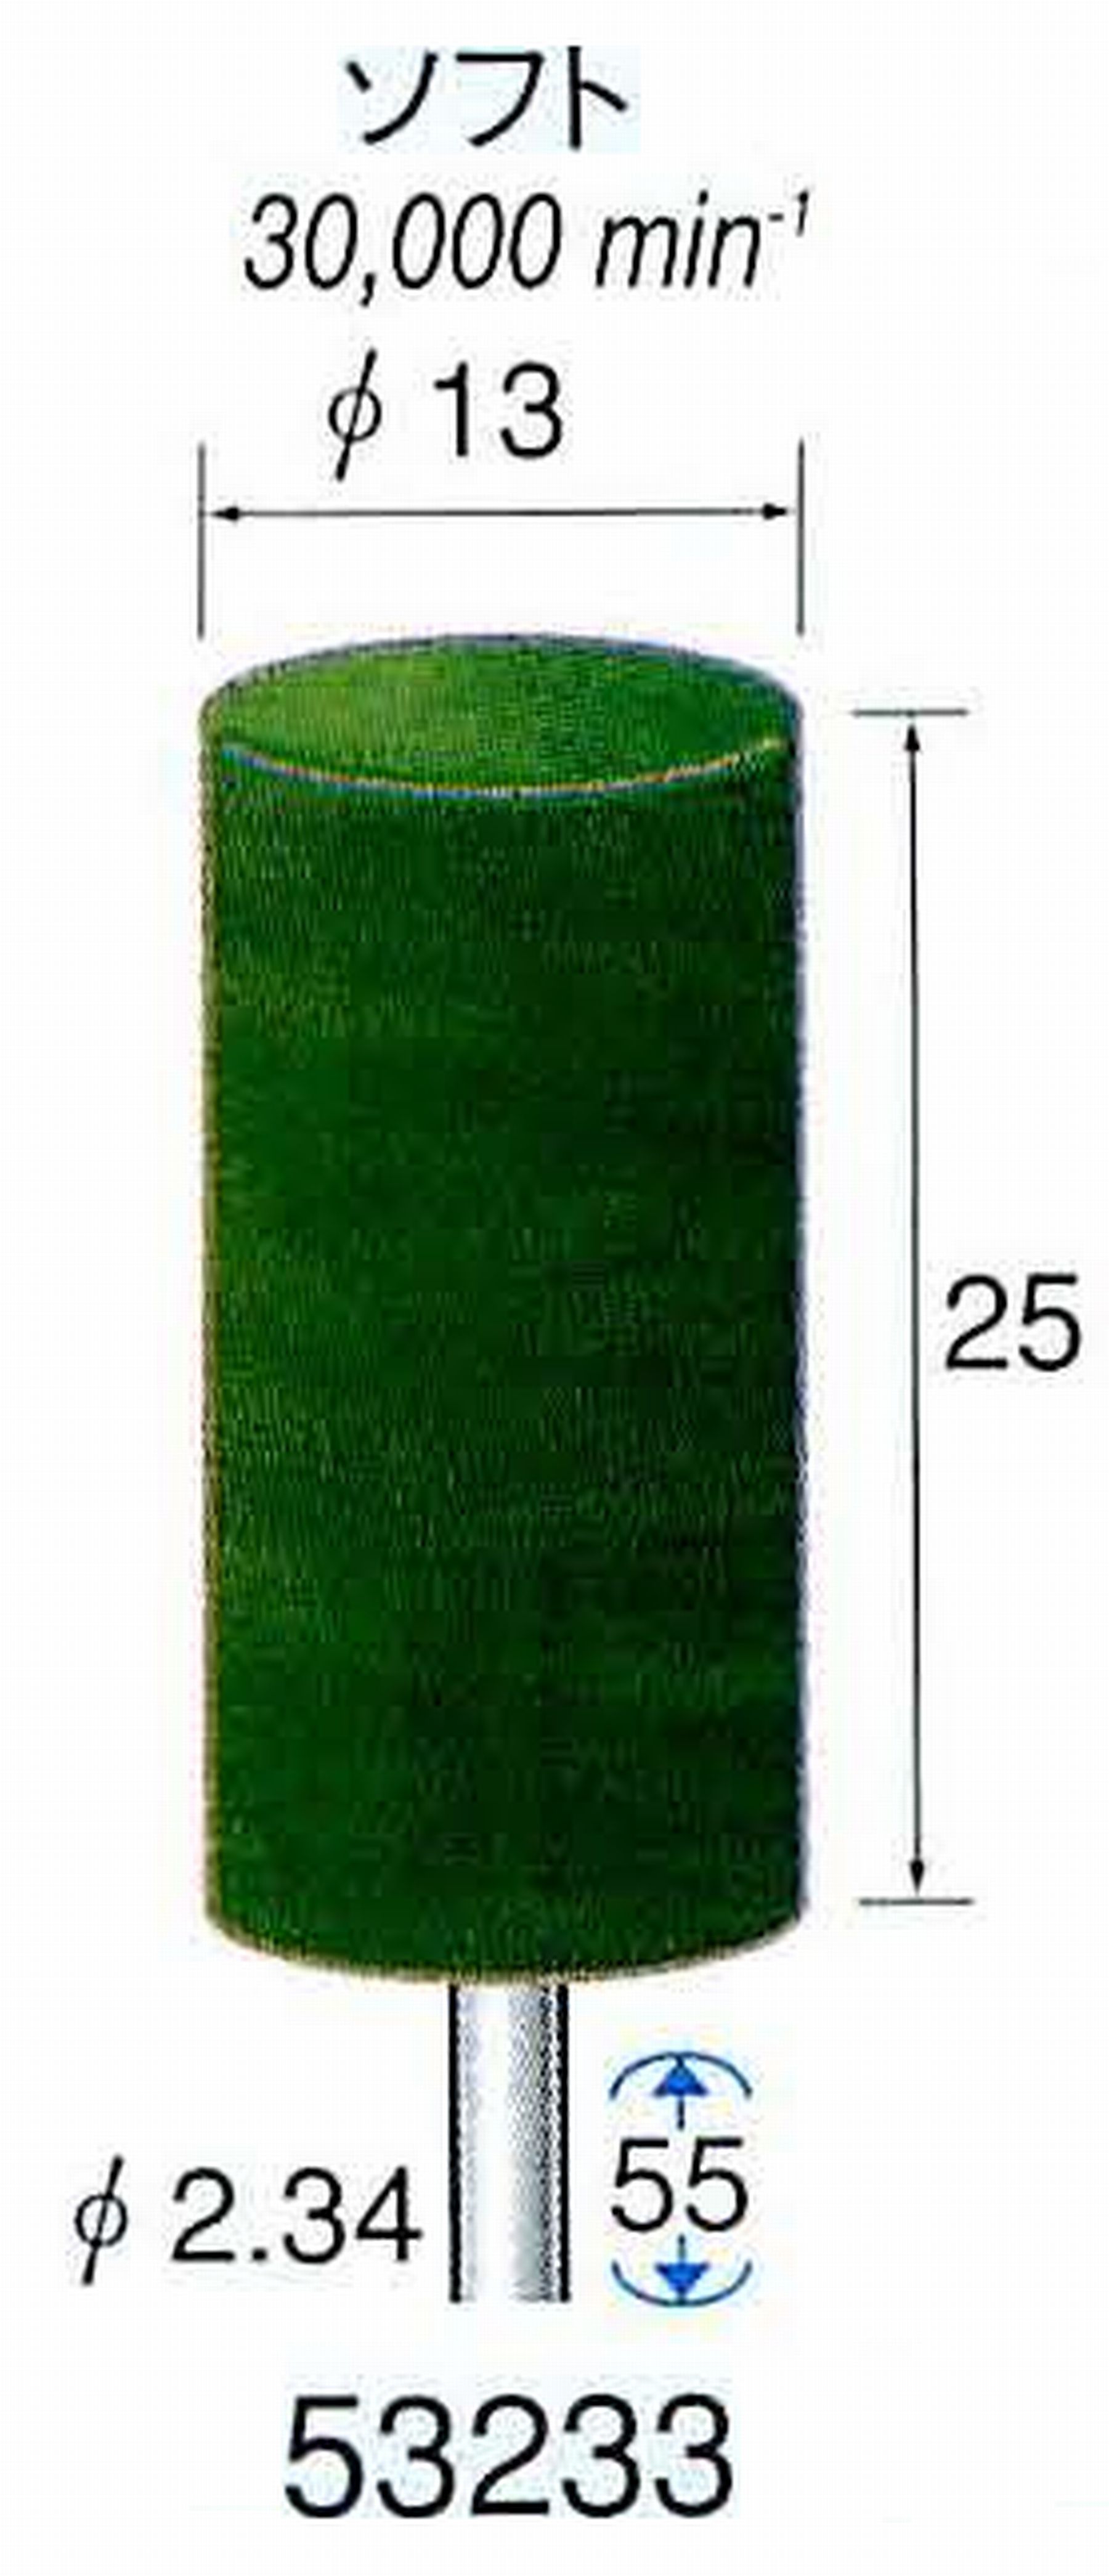 ナカニシ/NAKANISHI グリーンフェルトバフ ソフト(研磨材入り) 酸化クロム(青棒)含浸タイプ 軸径(シャンク)φ2.34mm 53233